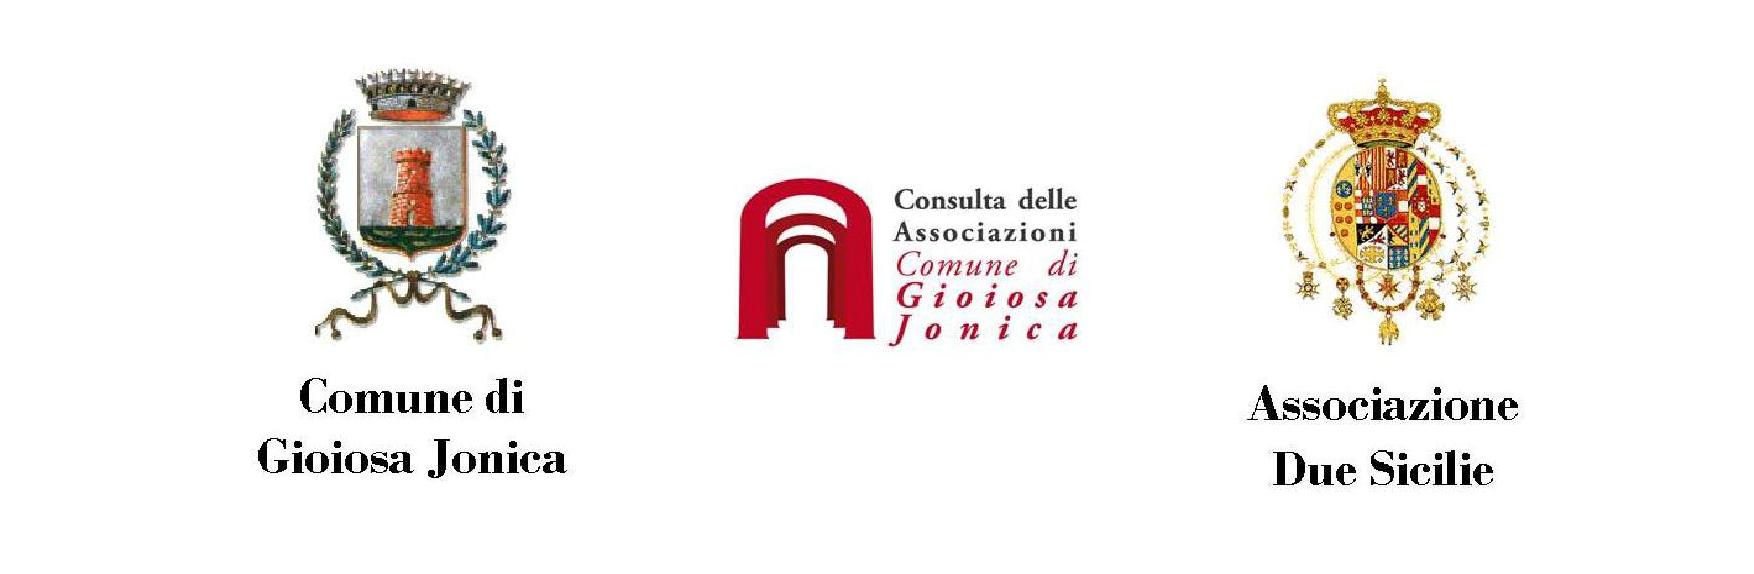 Stasera doppia iniziativa dell’Associazione “Due Sicilie”